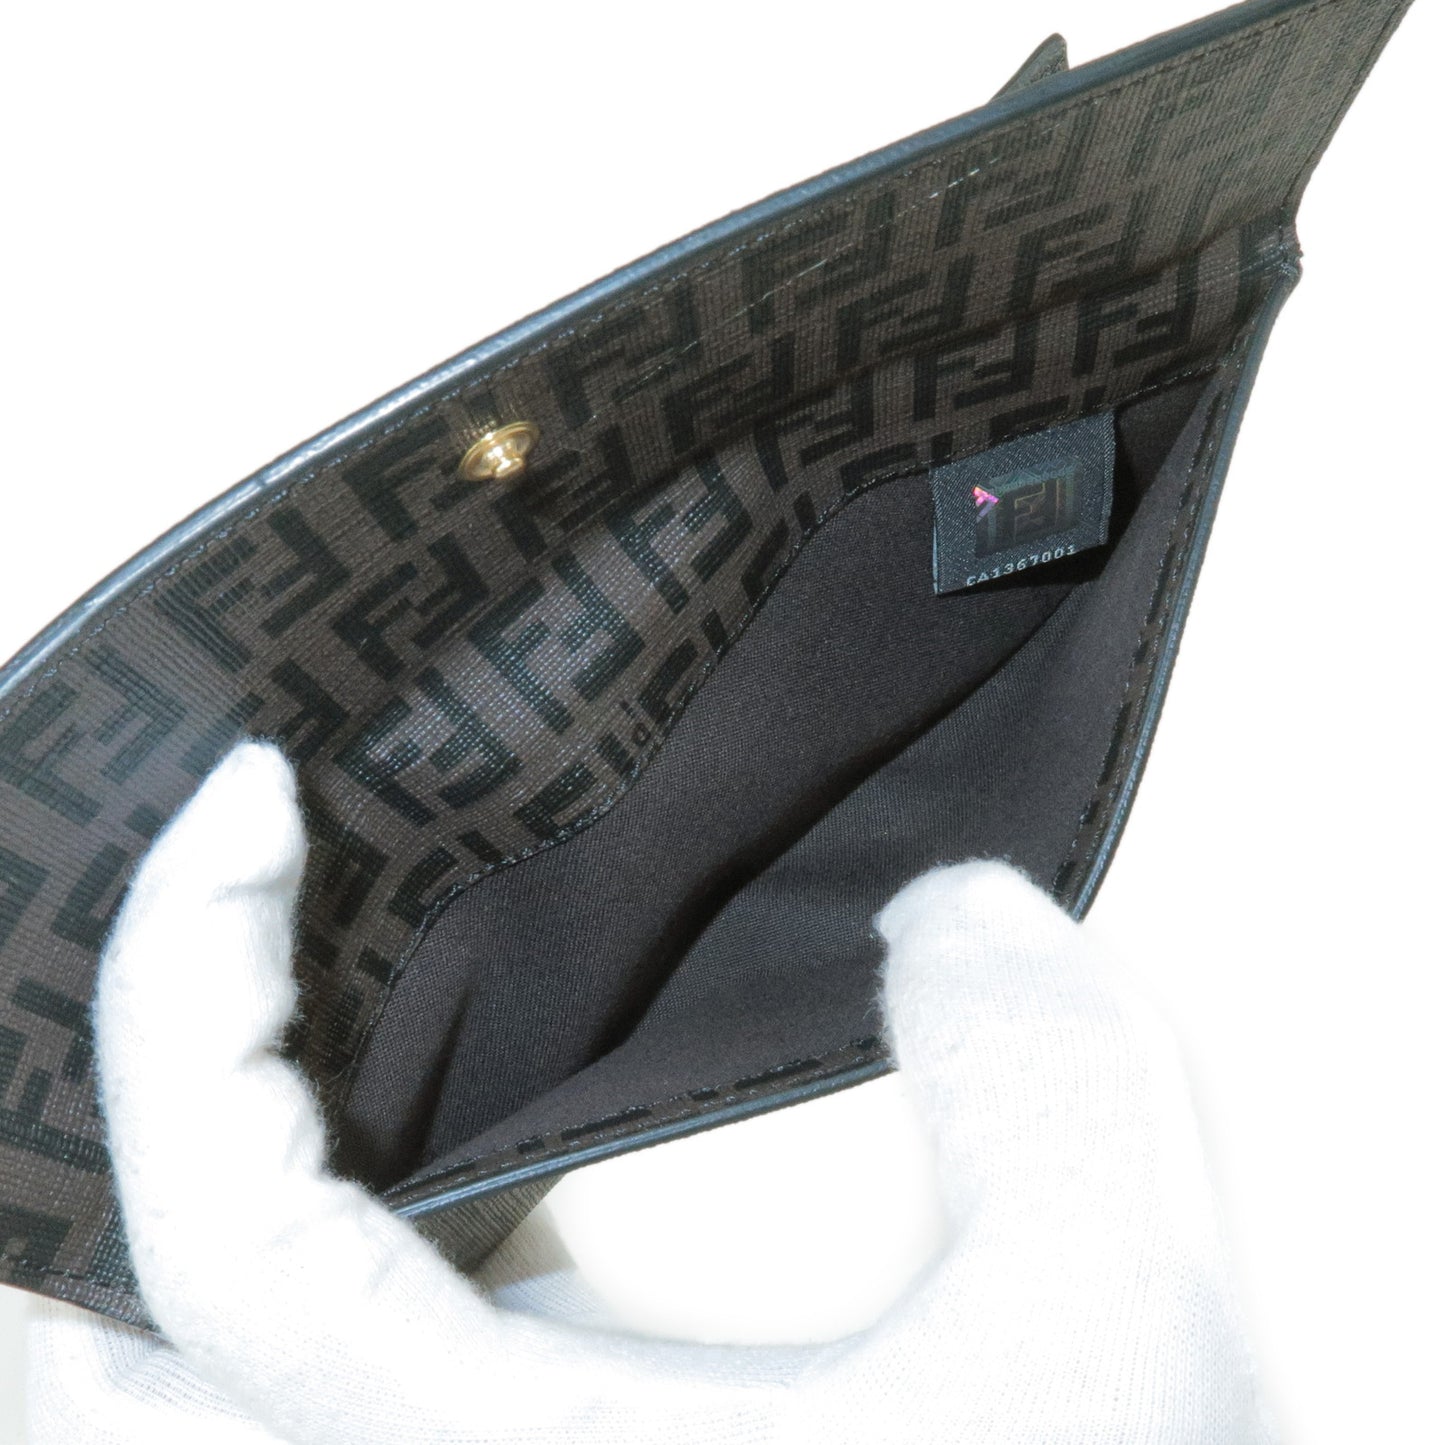 FENDI Zucchino Print PVC Bi-Fold Long wallet Brown Black 8M0032